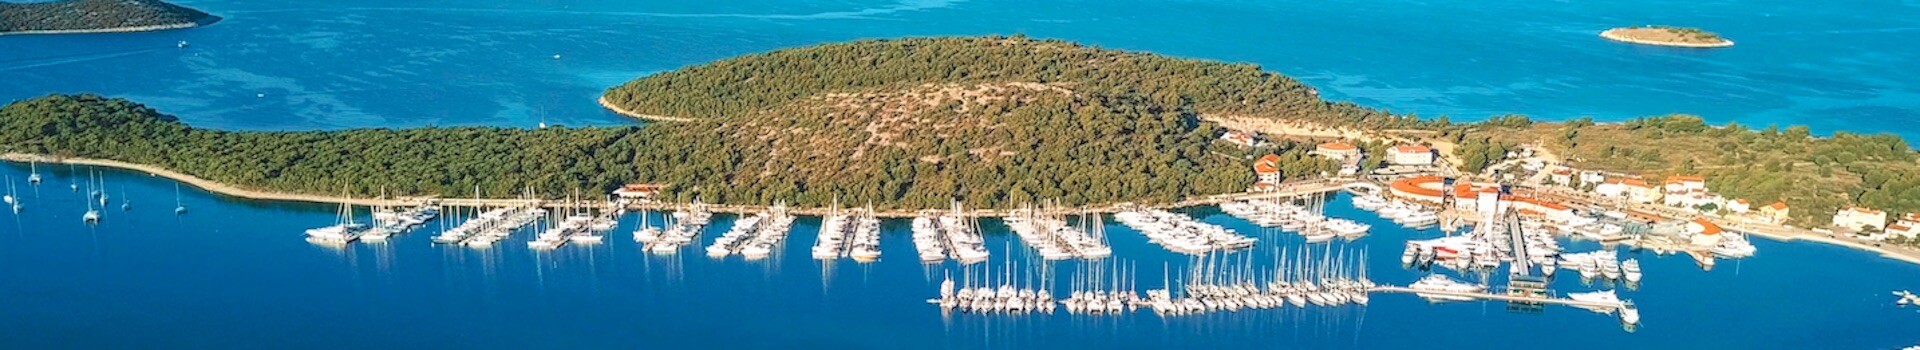 Dalmatia Croatia